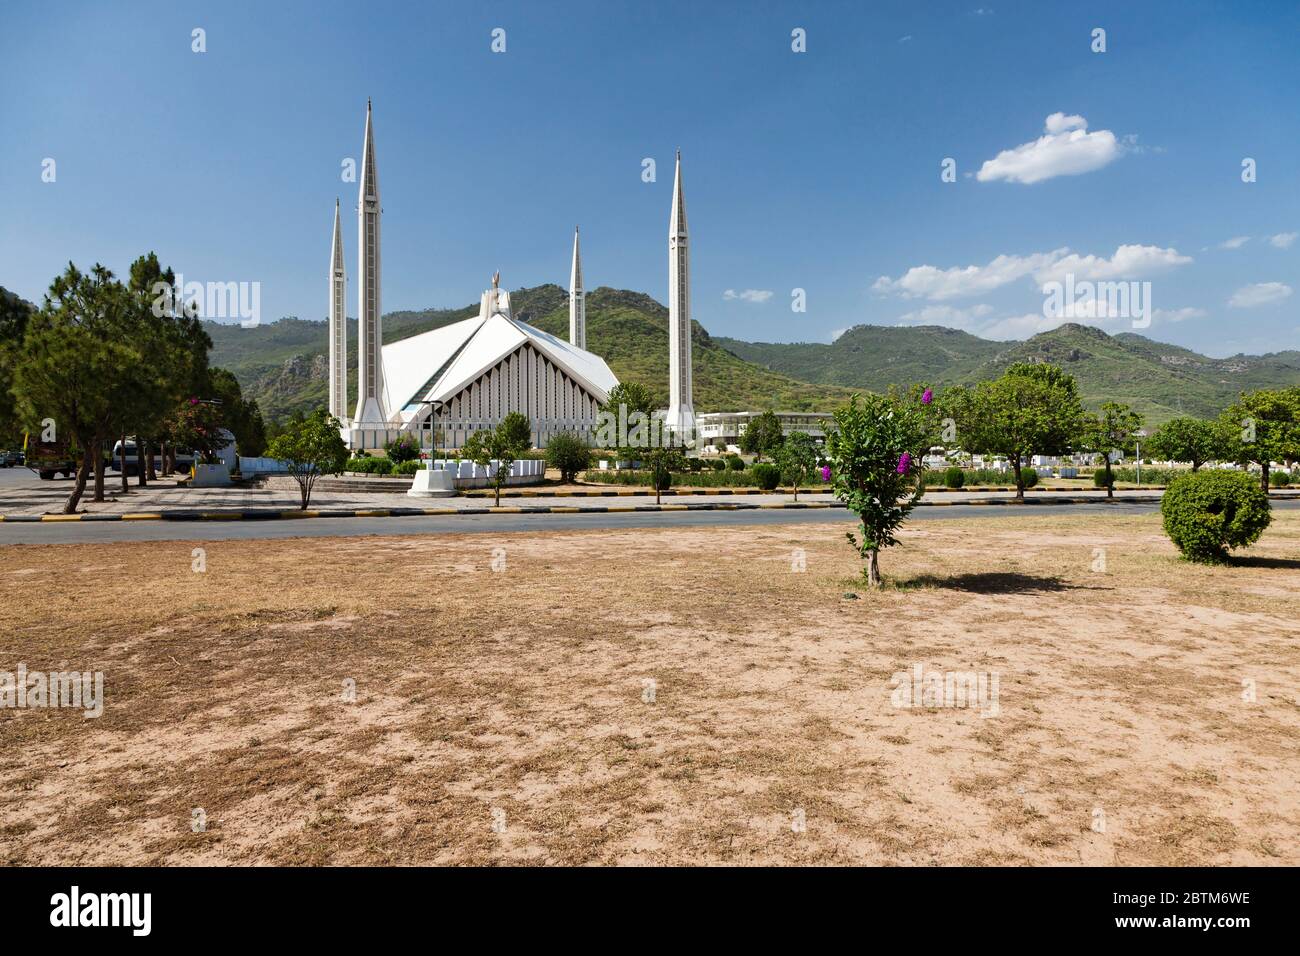 Mosquée Faisal, mosquée moderne en forme de tente bédouine, Islamabad, territoire de la capitale d'Islamabad, Pakistan, Asie du Sud, Asie Banque D'Images